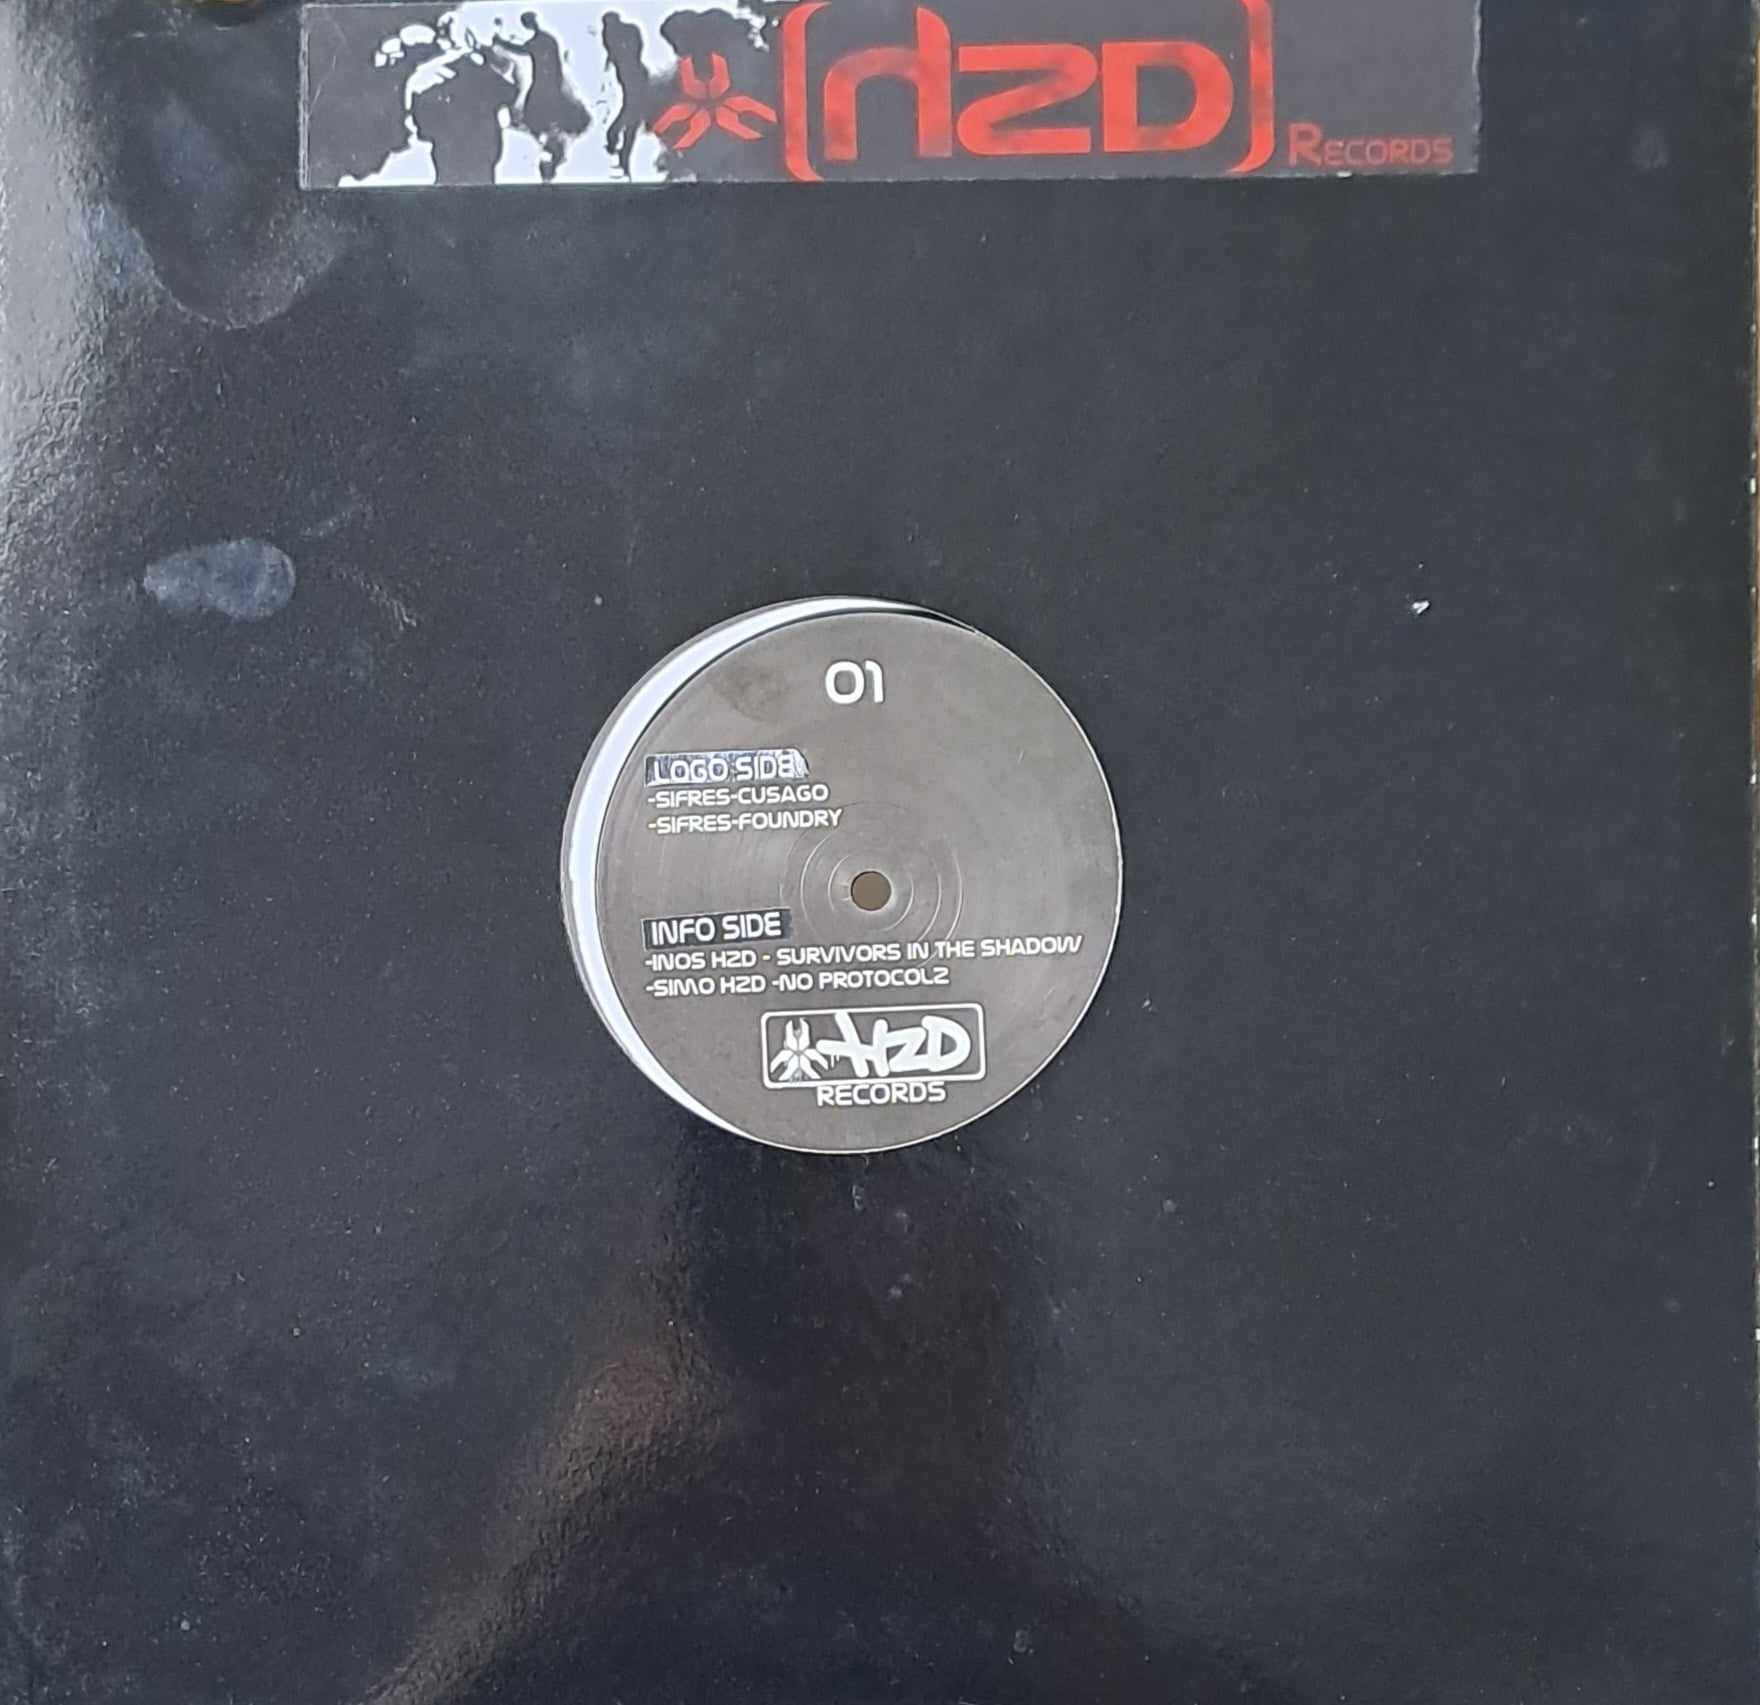 Hzd Records 01 - vinyle acid